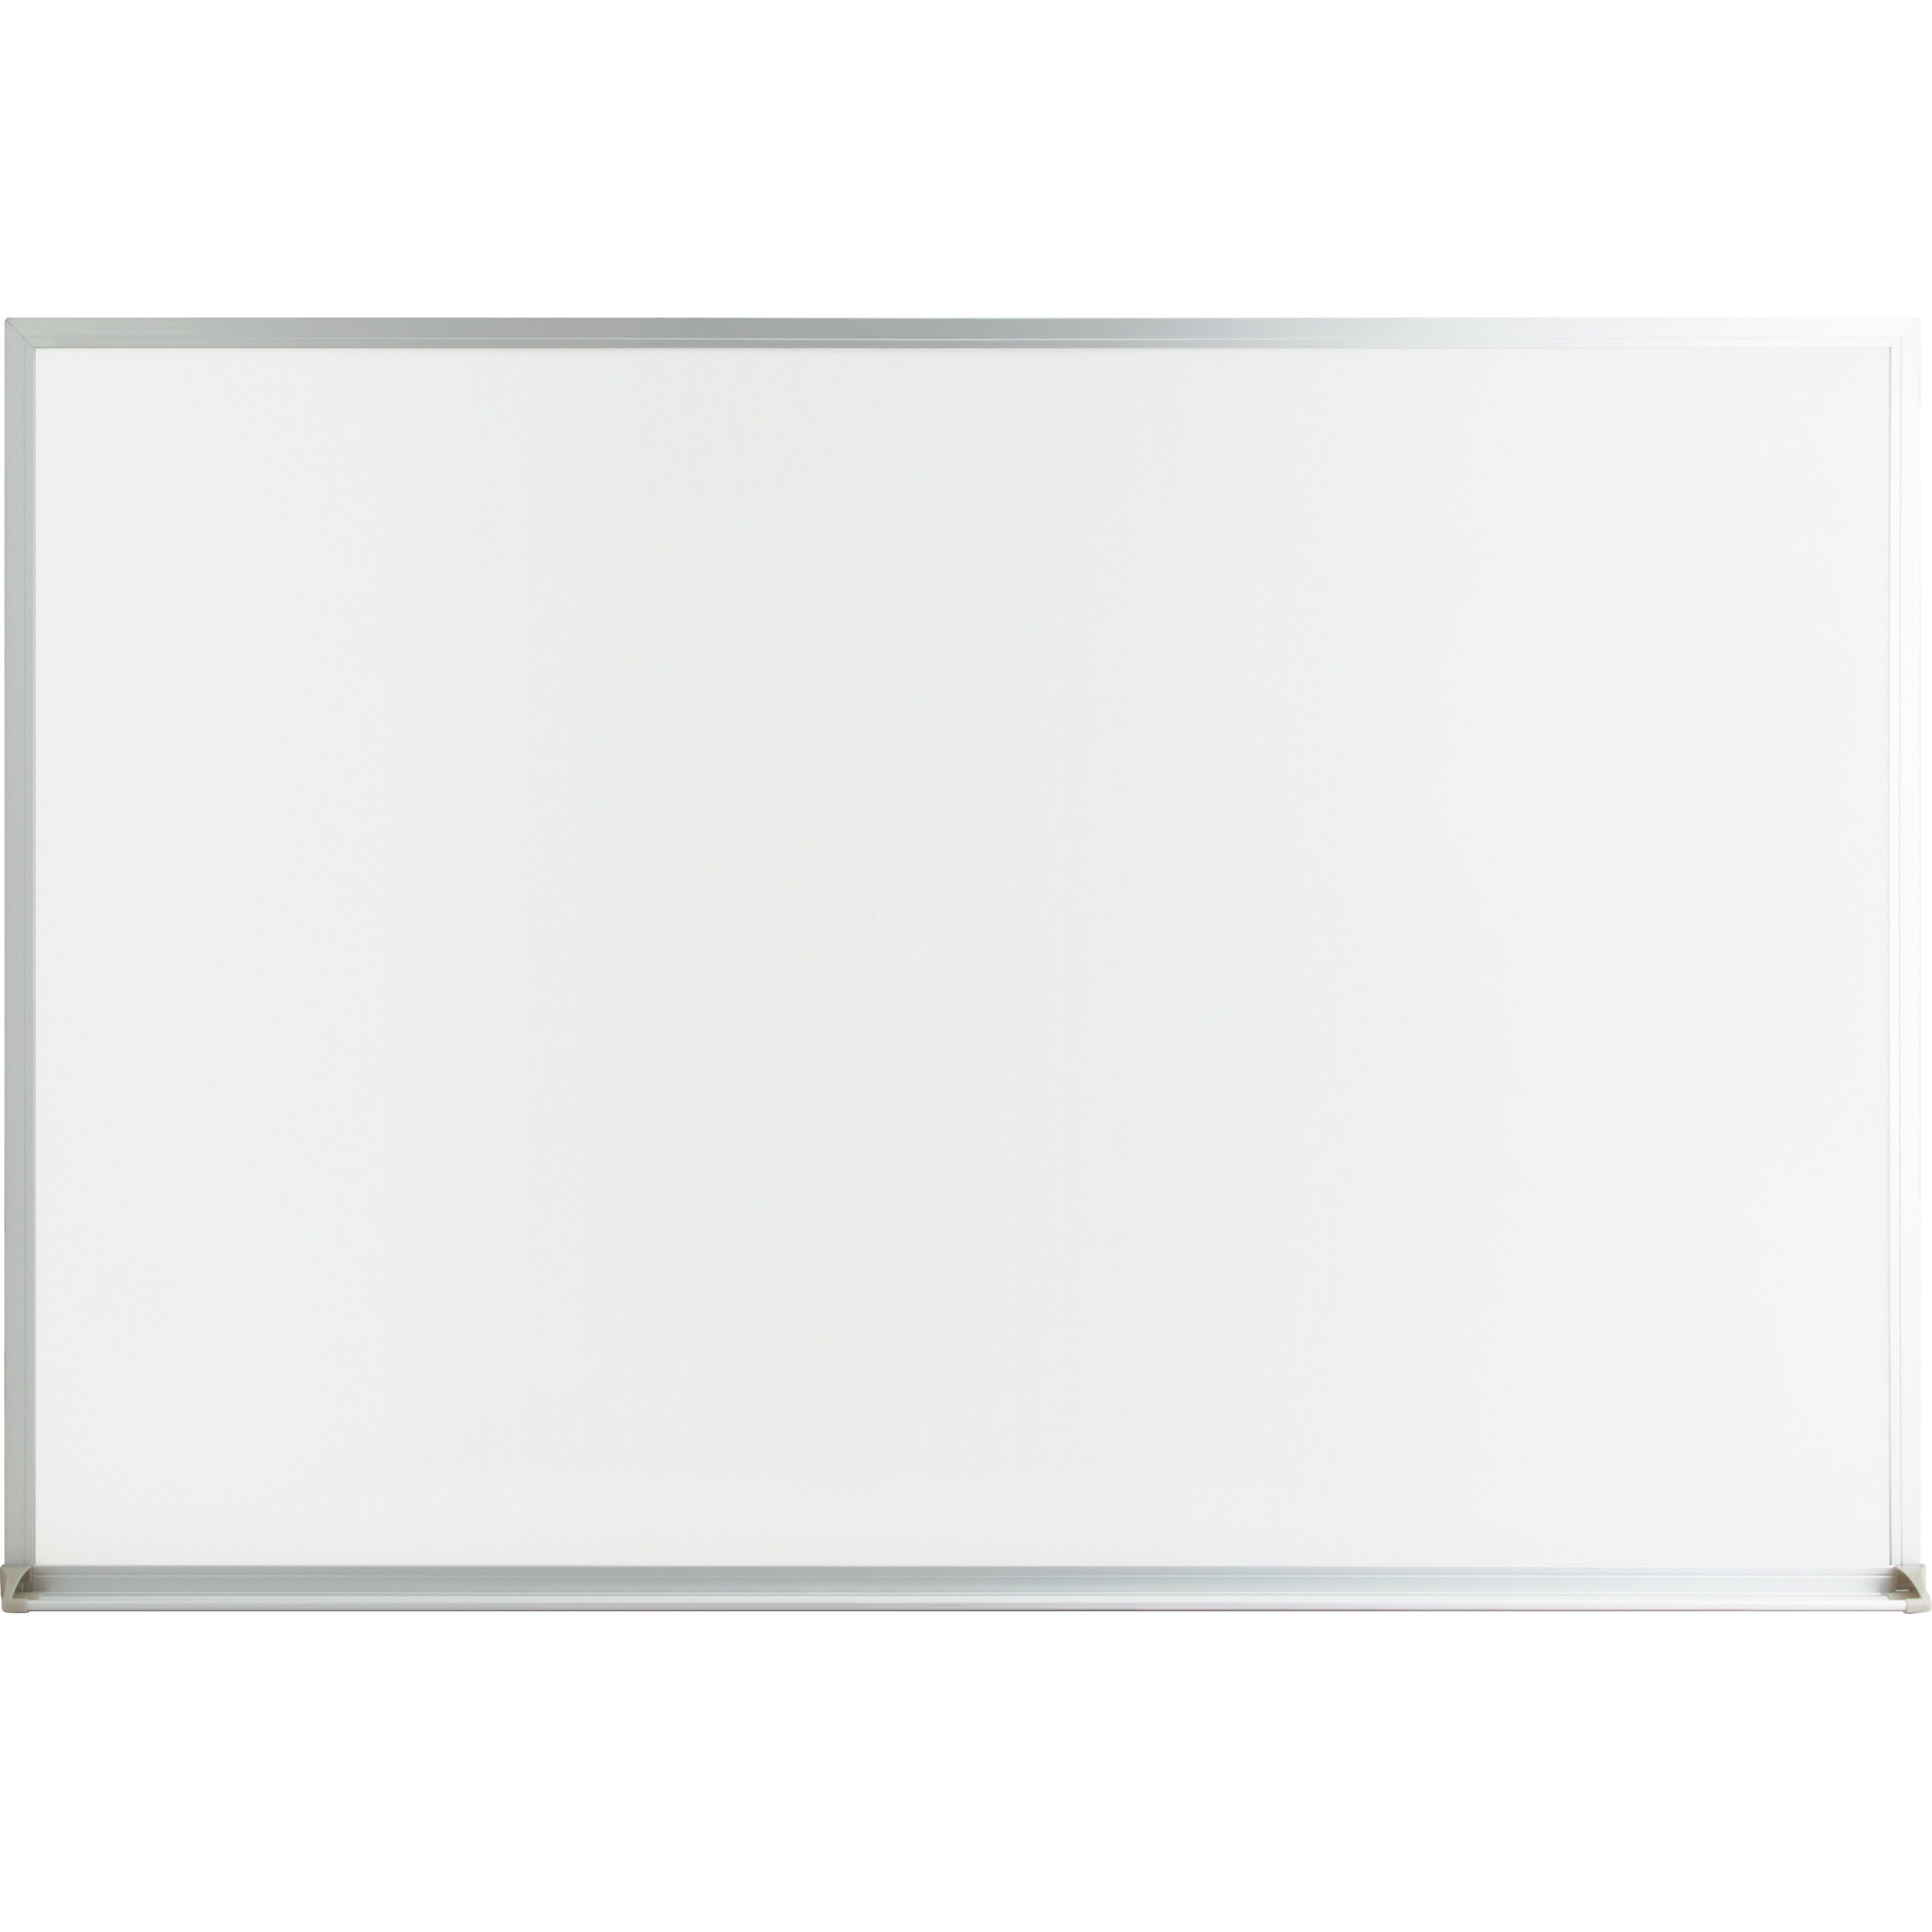 lorell-economy-dry-erase-board-24-2-ft-width-x-18-15-ft-height-white-melamine-surface-white-aluminum-frame-rectangle-1-each_llr19769 - 1